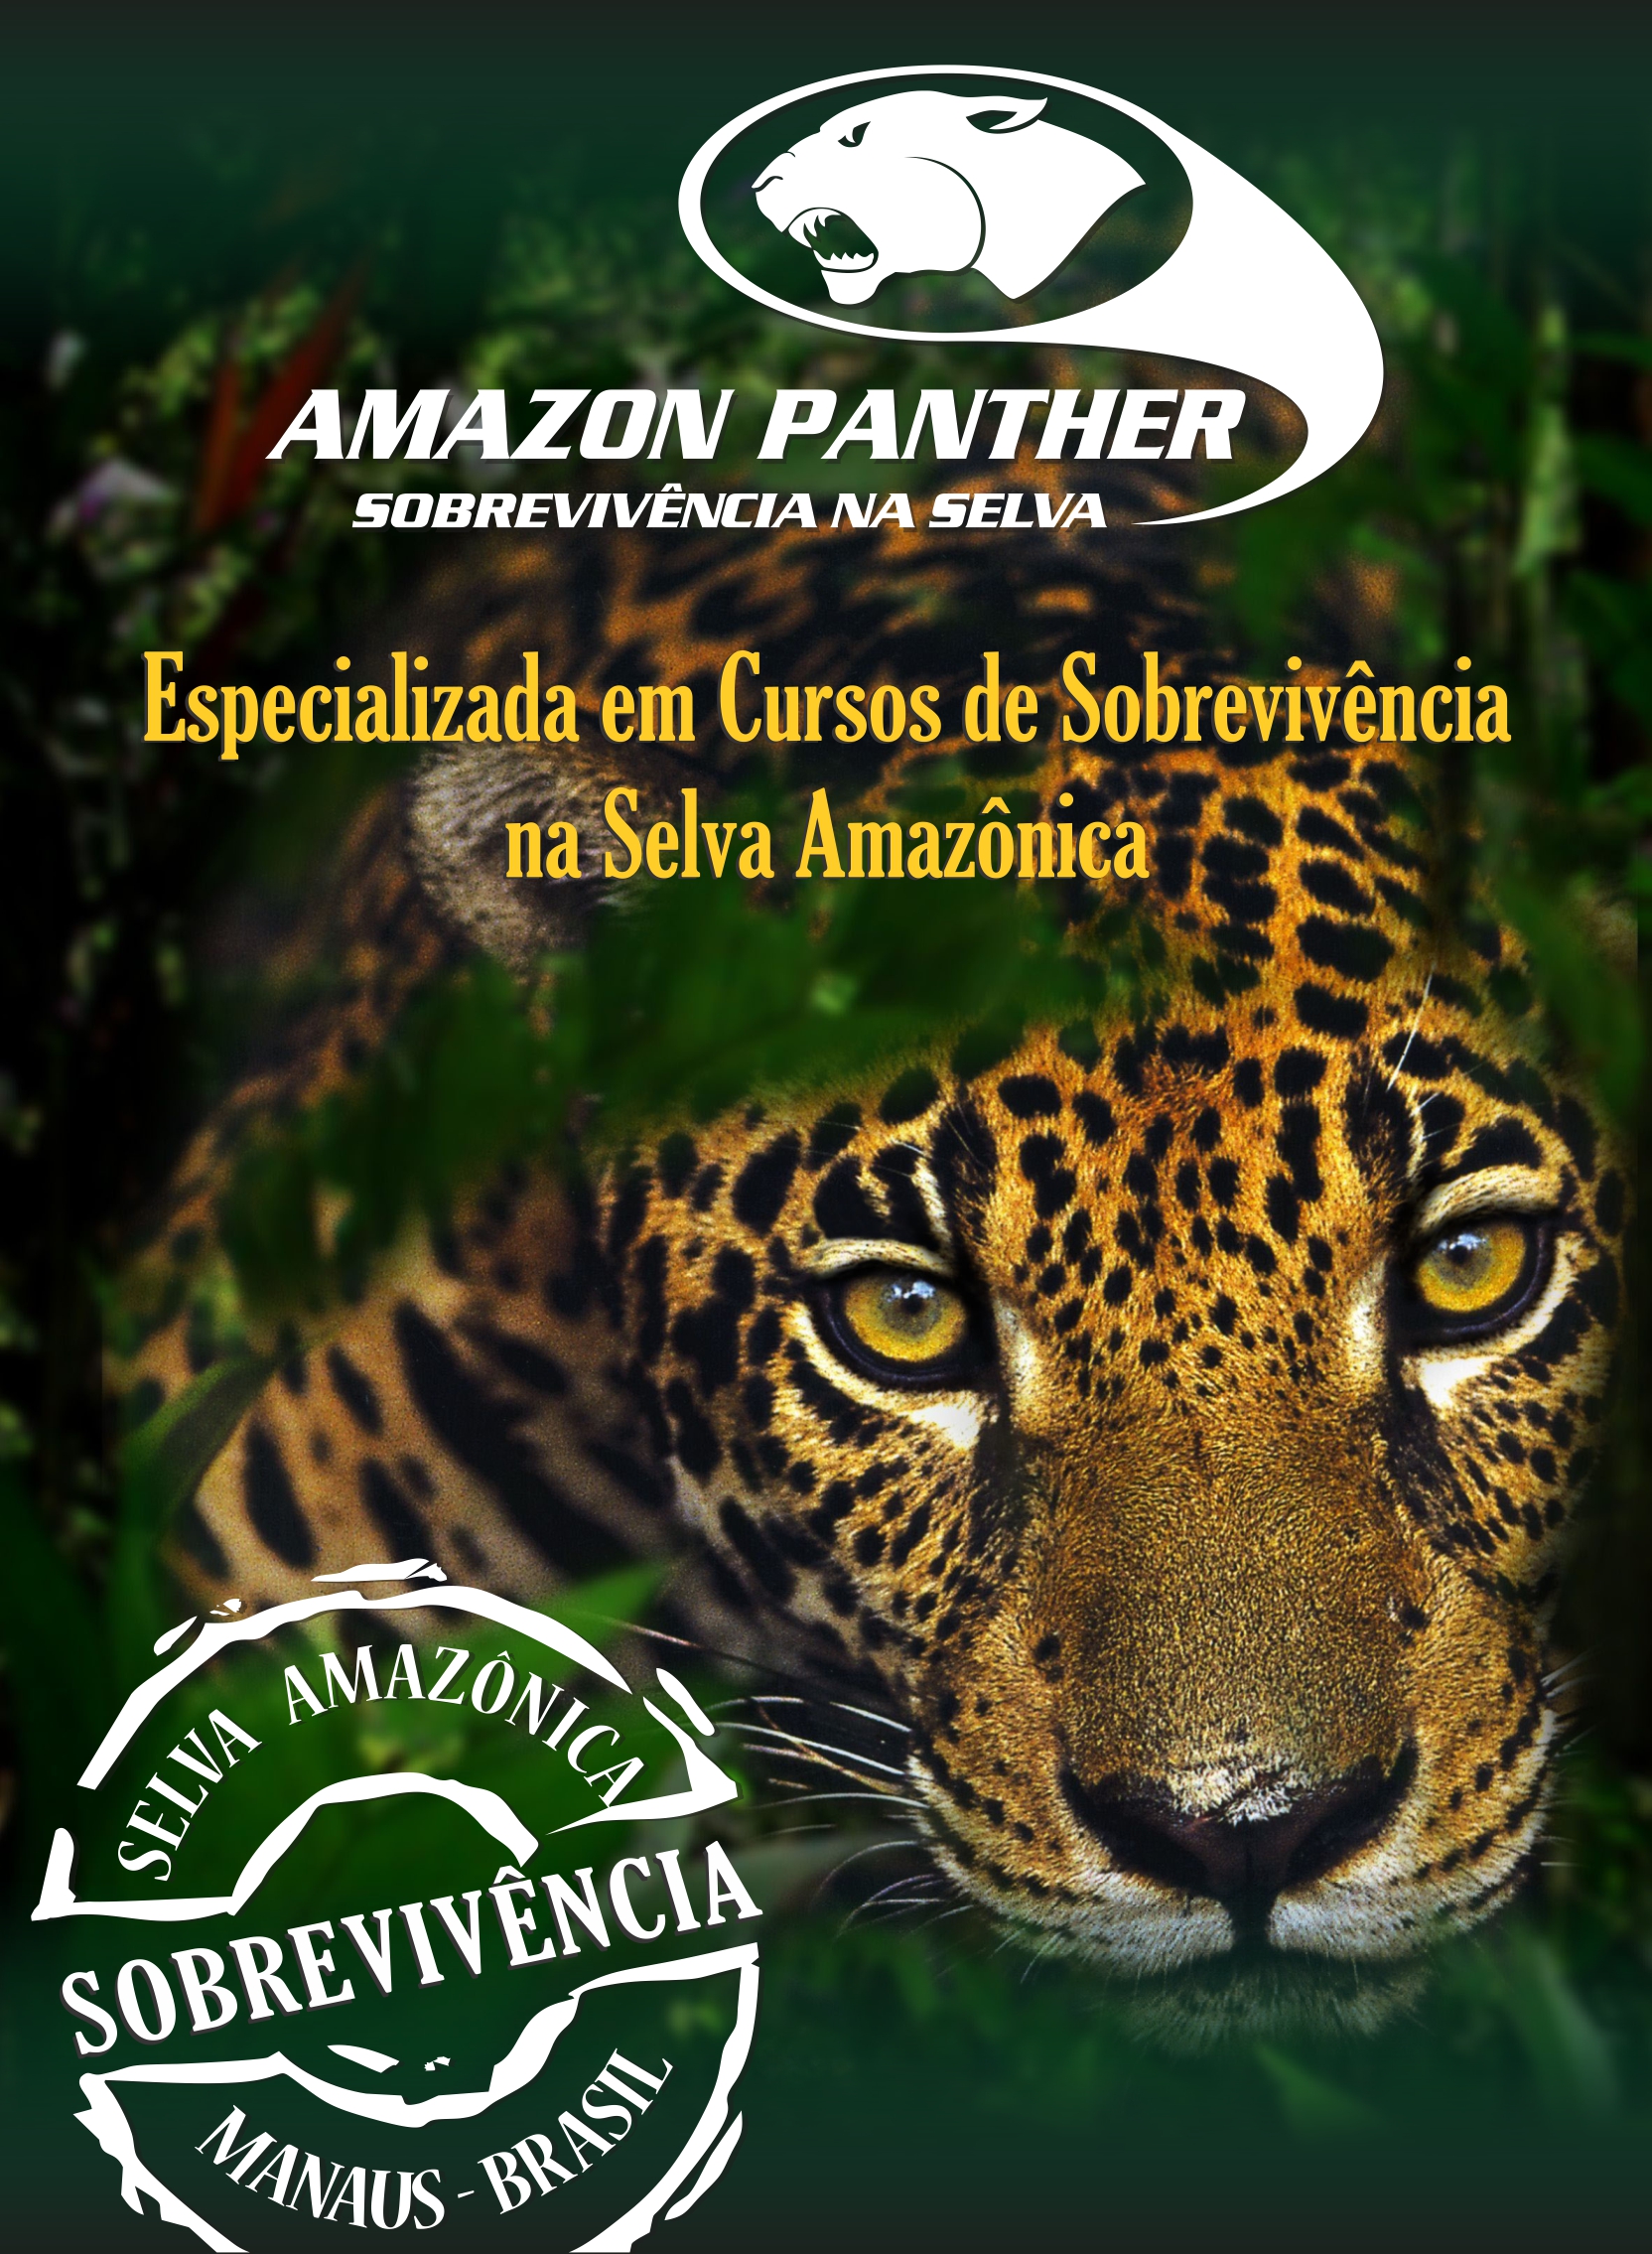 Sobrevivência na Amazônia